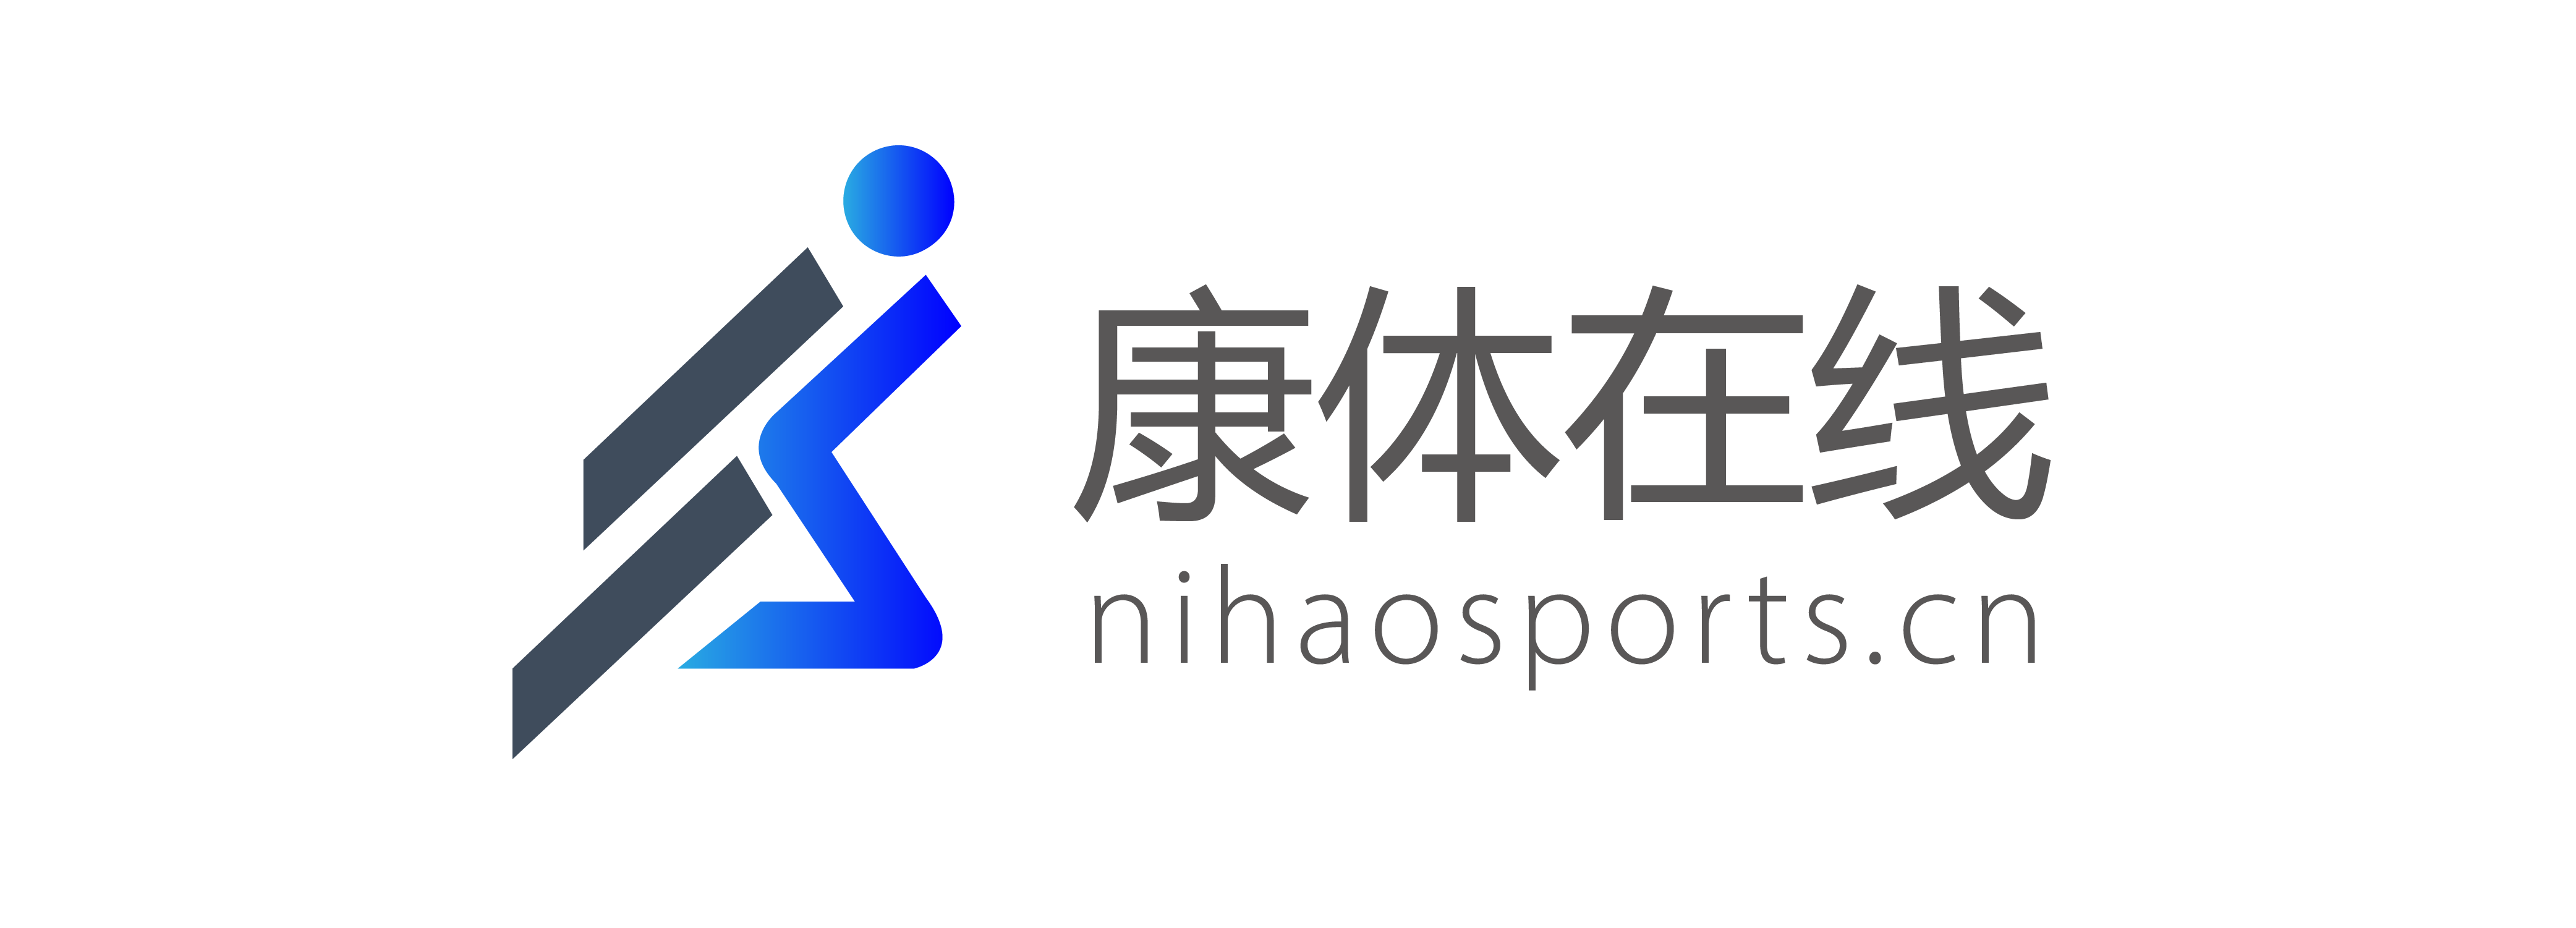 B2B planteform — Nihaosports